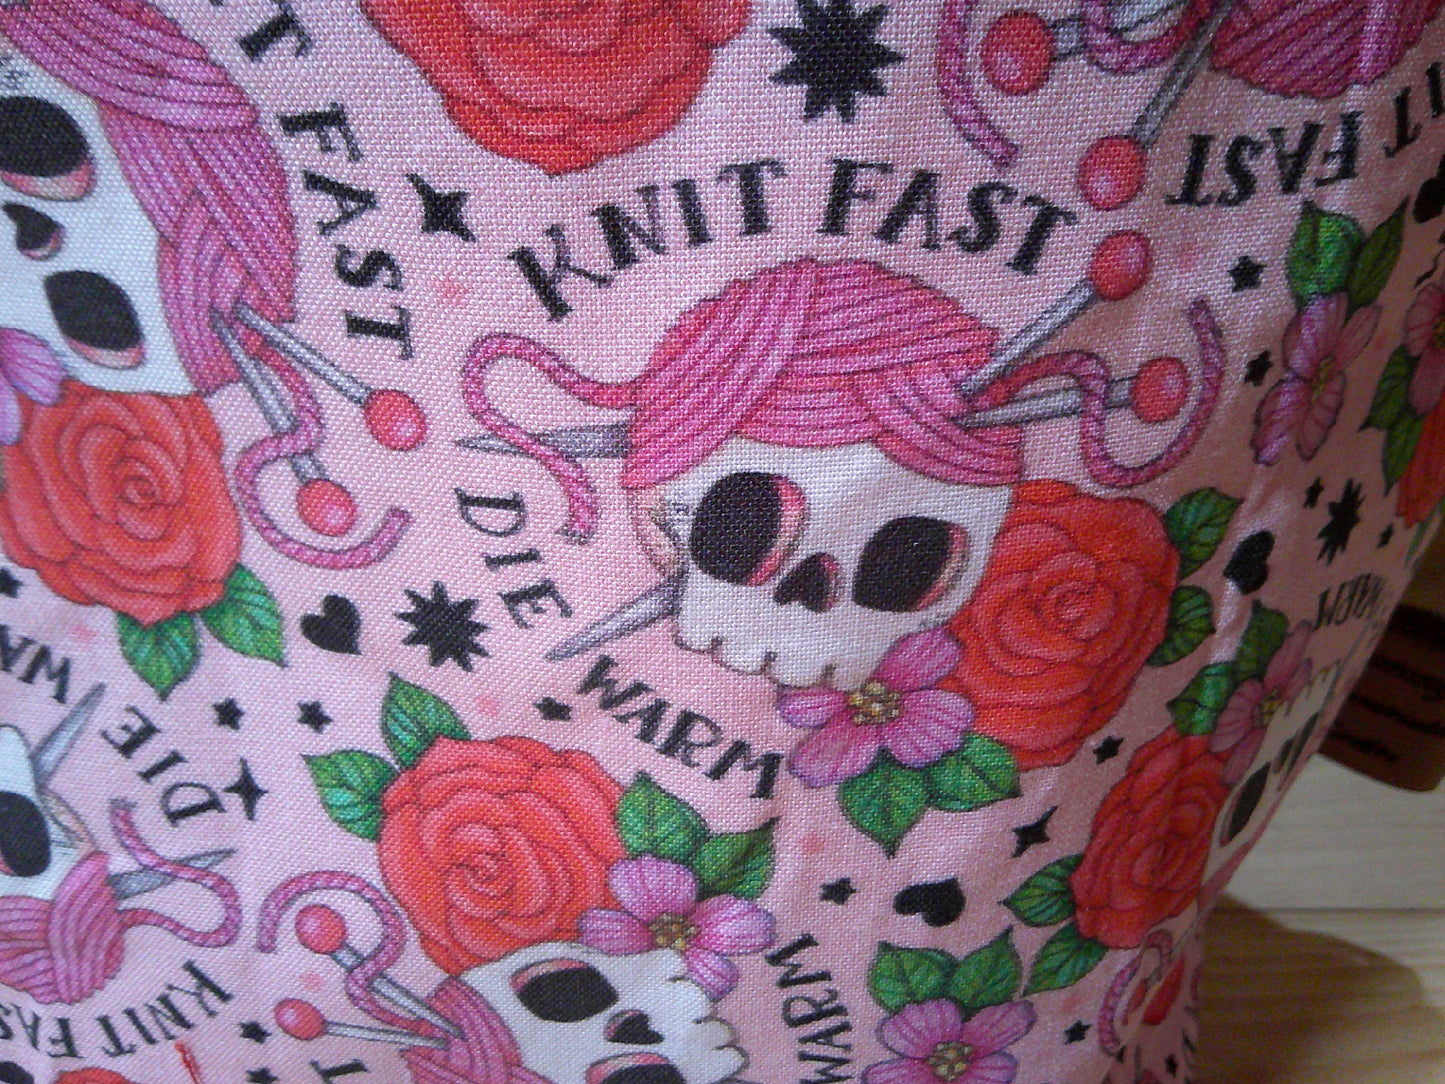 "Knit fast Die warm" w/ yarn hat on skull project bags